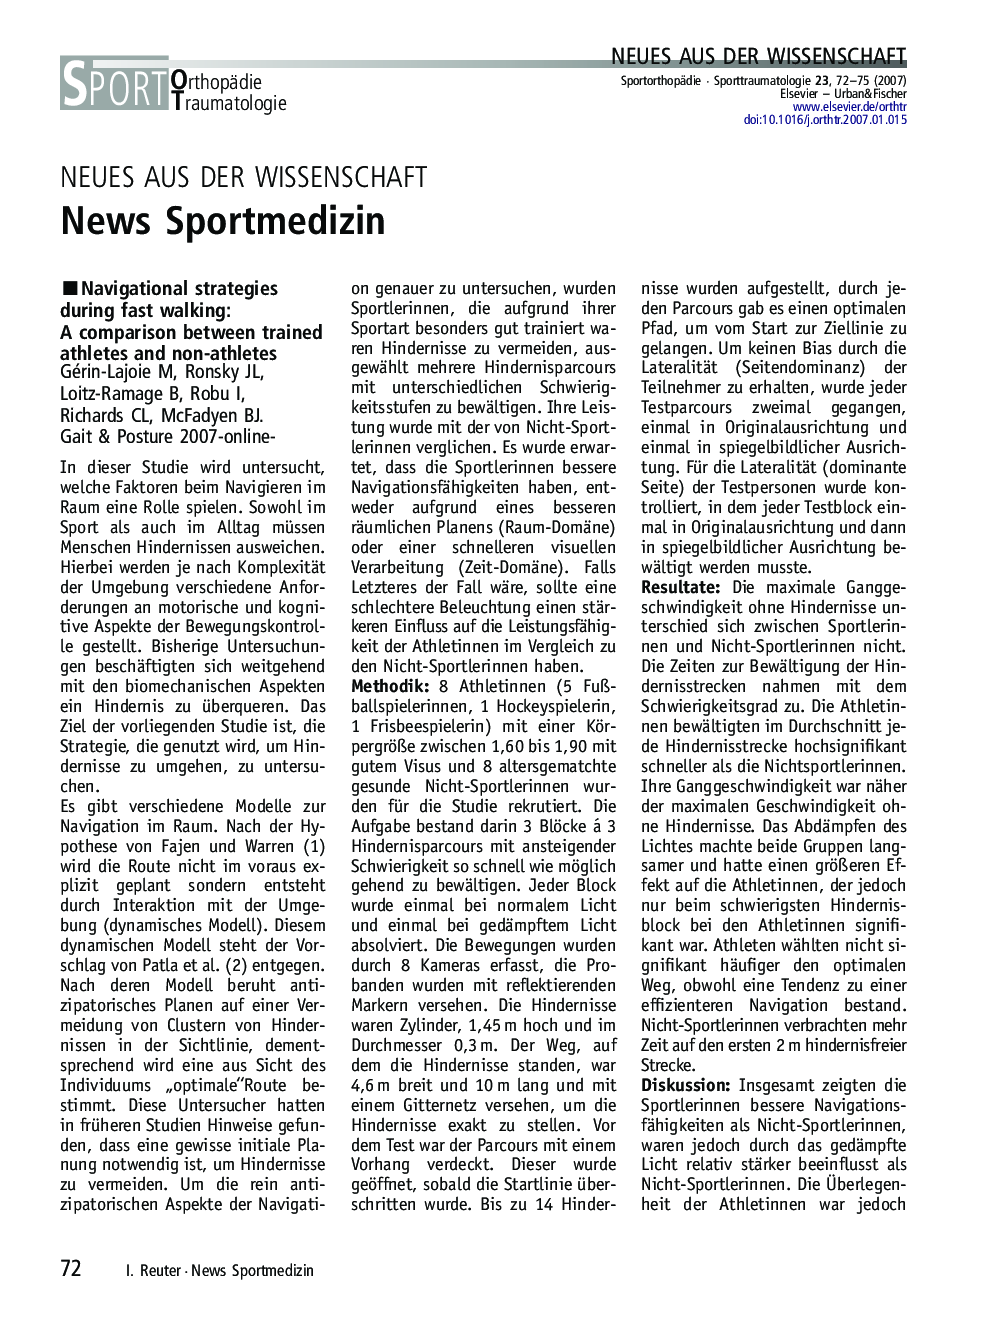 News Sportmedizin